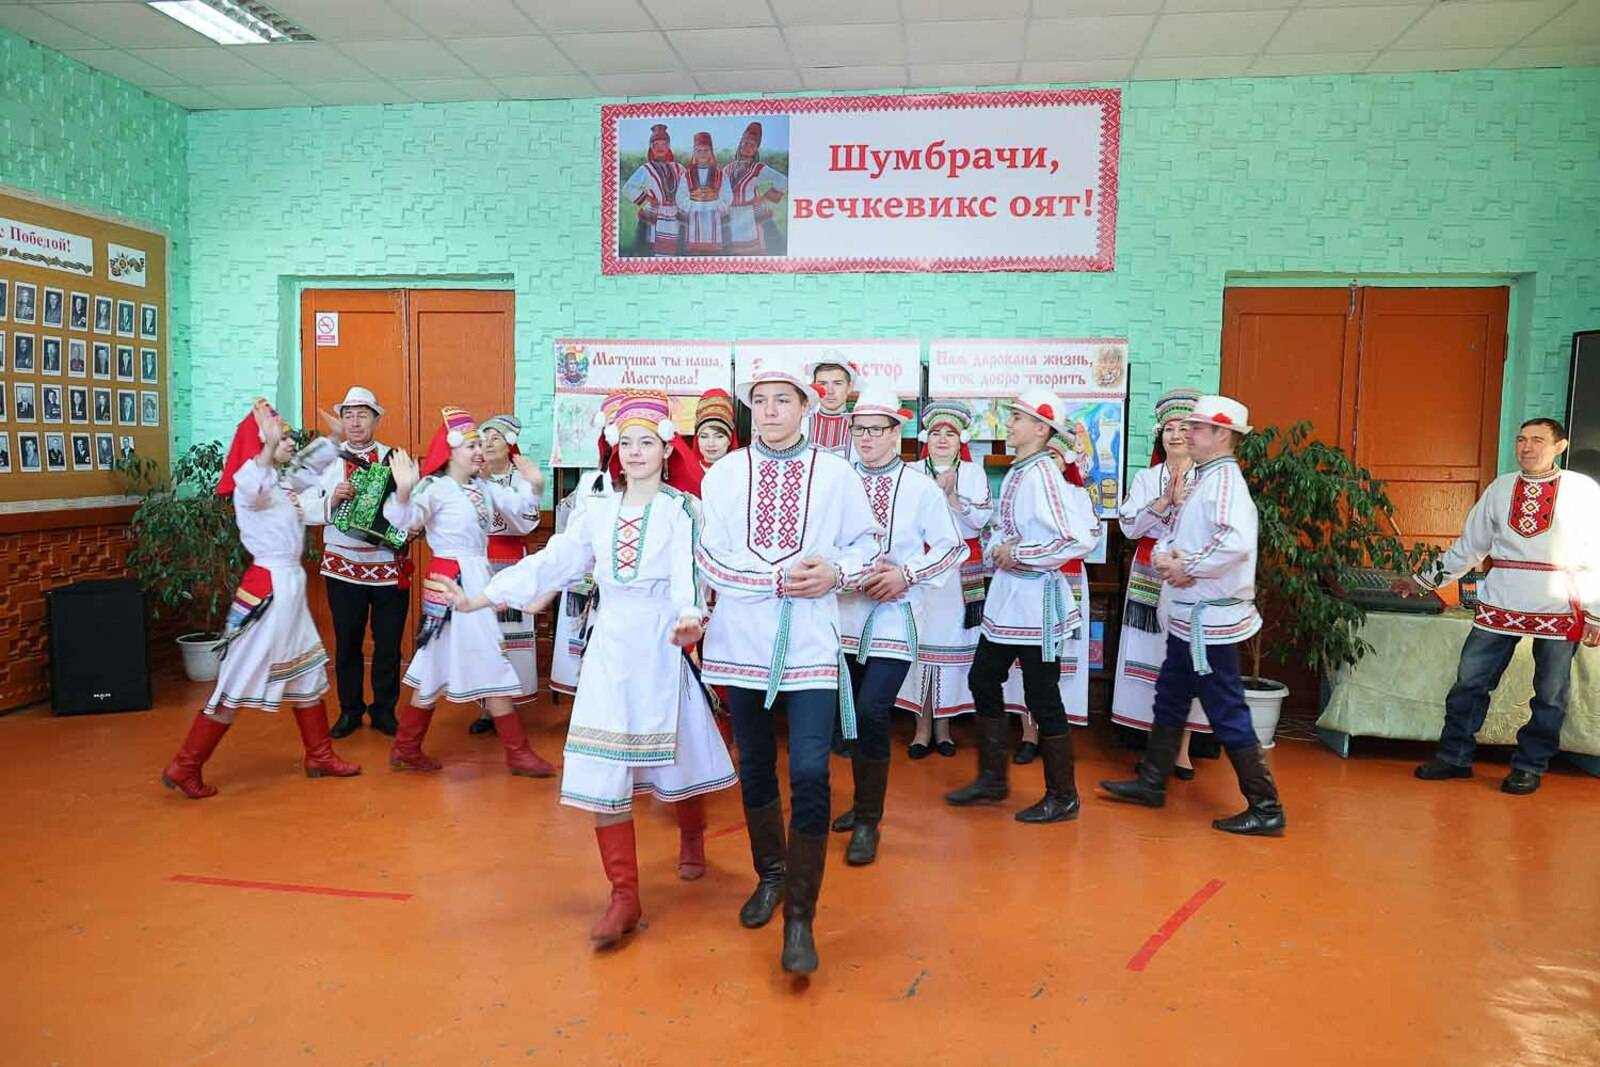 В Башкирии открылась мордовская библиоэтностудия «Лисьмаприне»